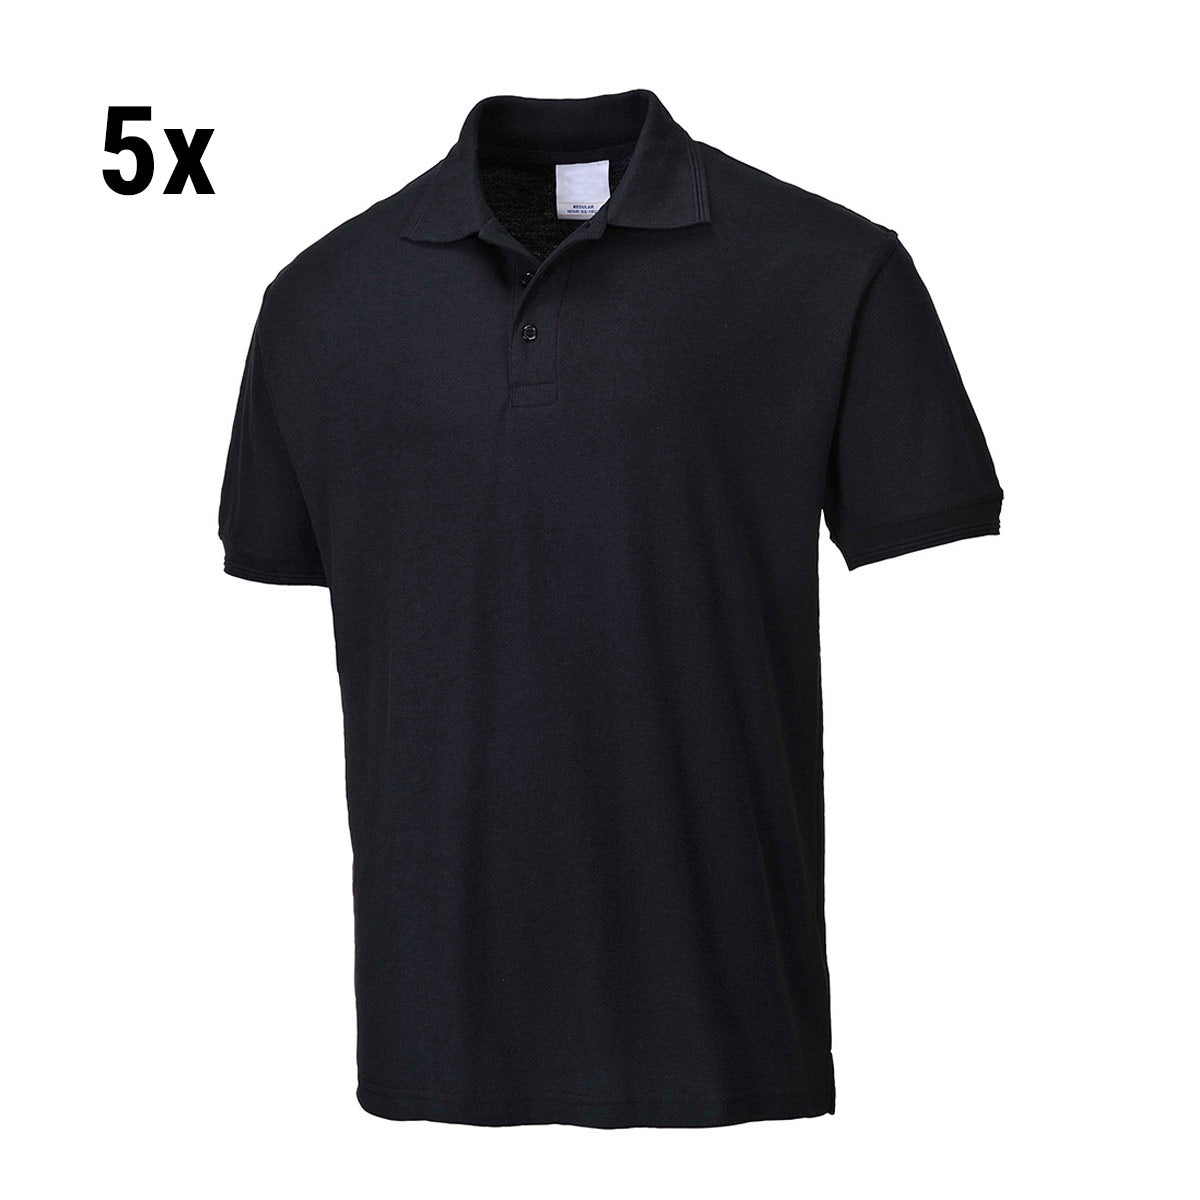 (5 stk) Poloskjorte til menn - Svart - Størrelse: 3XL